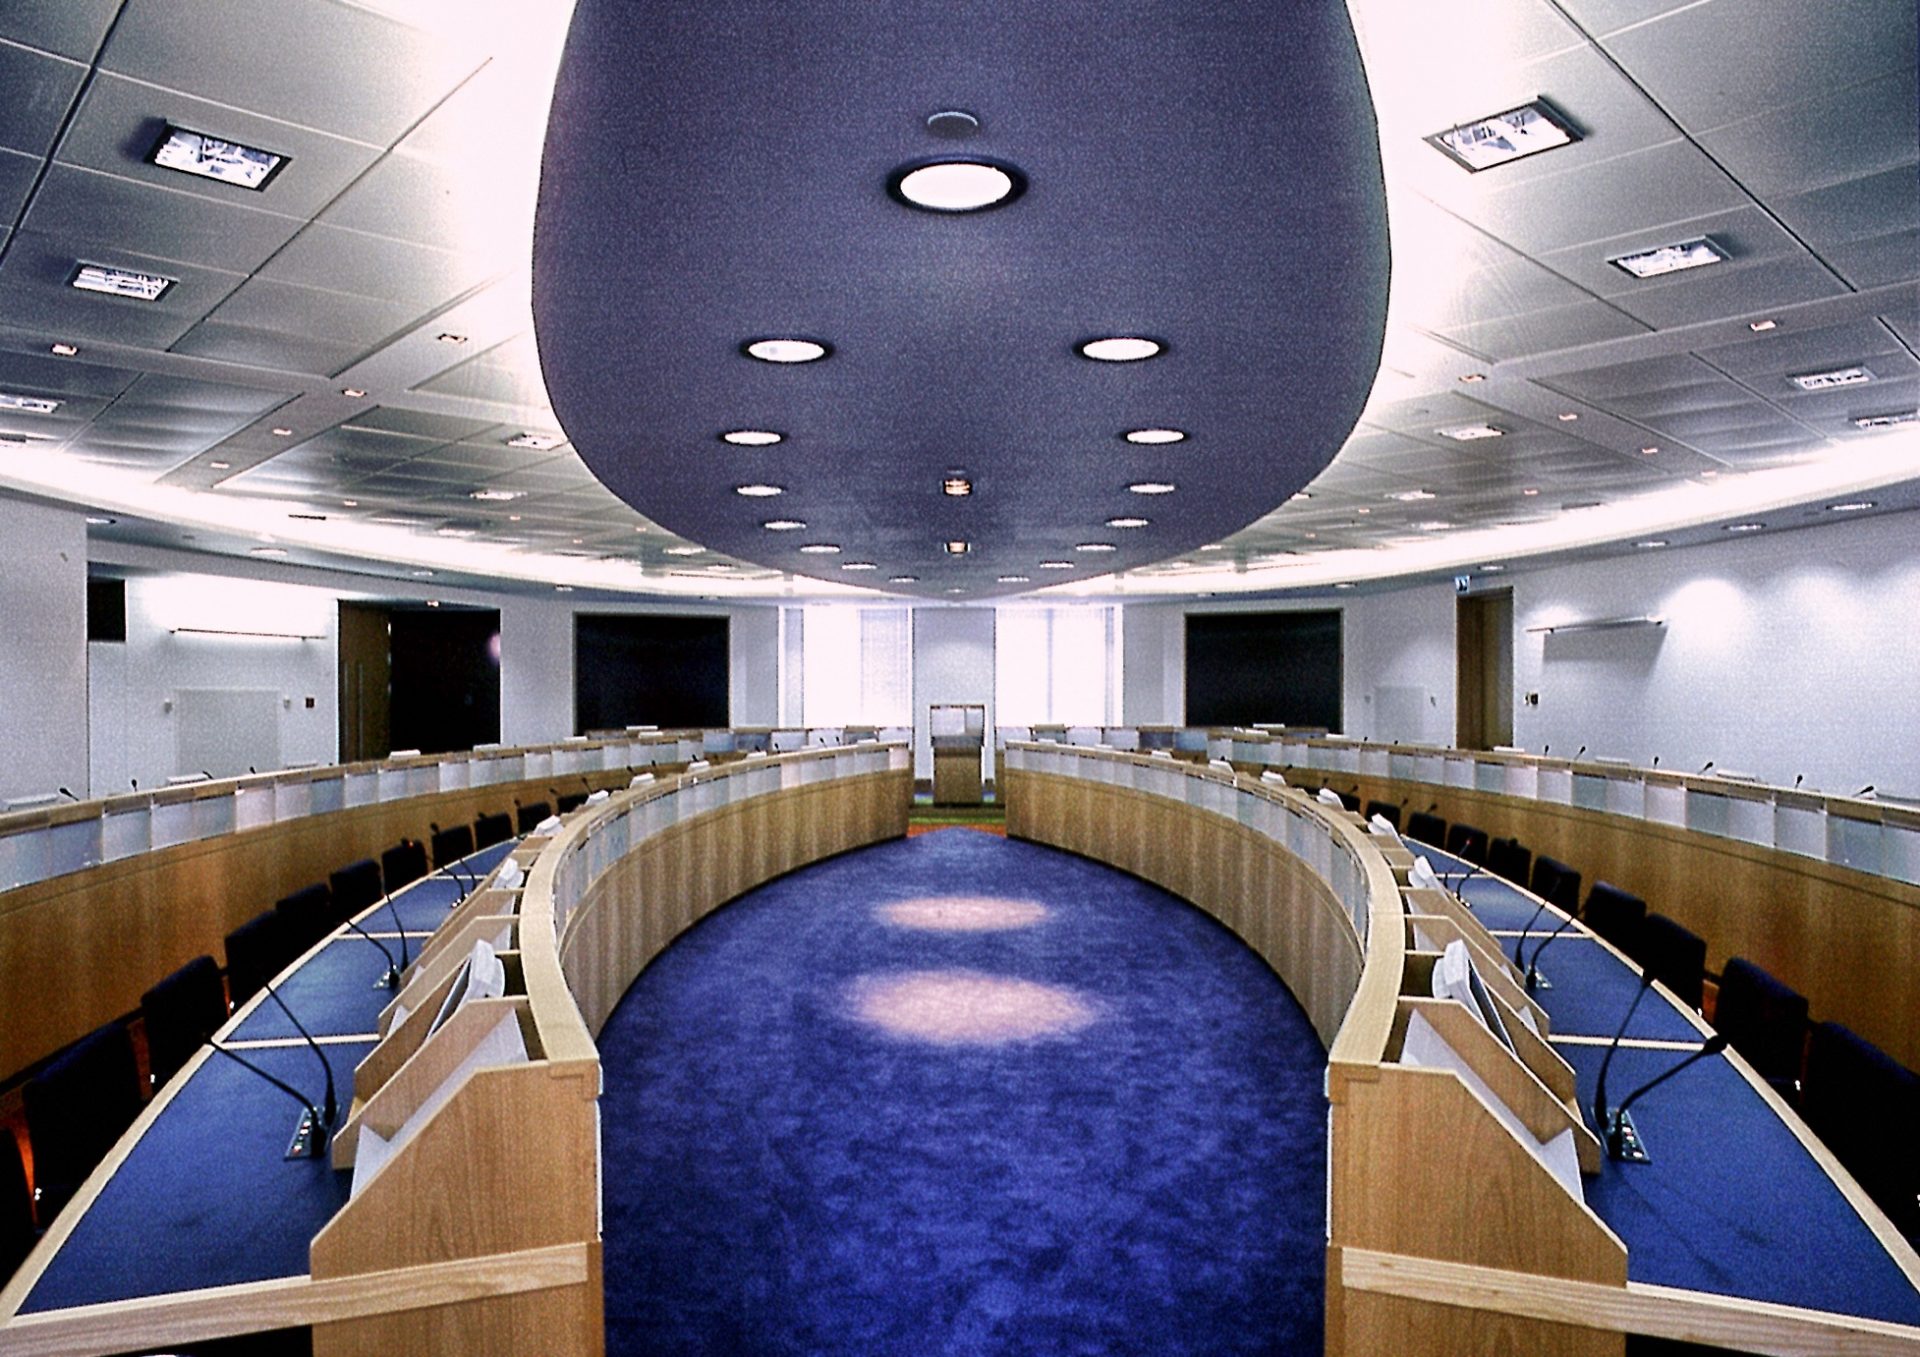 EMEA Canary Wharf Conference Centre Desks Ceiling